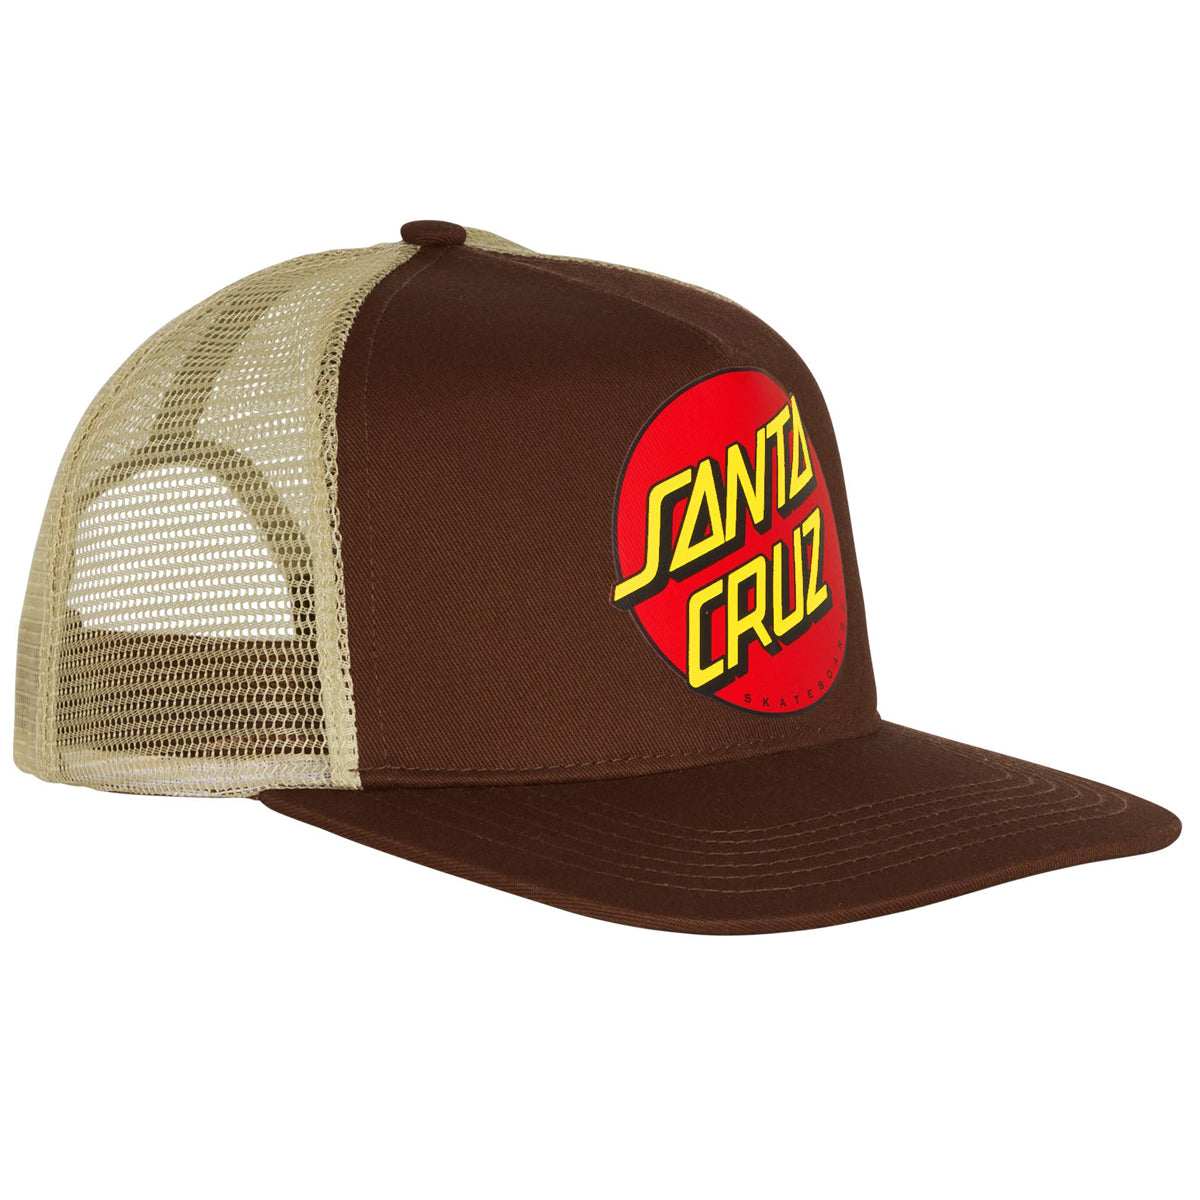 Santa Cruz Classic Dot Mesh Trucker Hat - Tan/Brown image 3